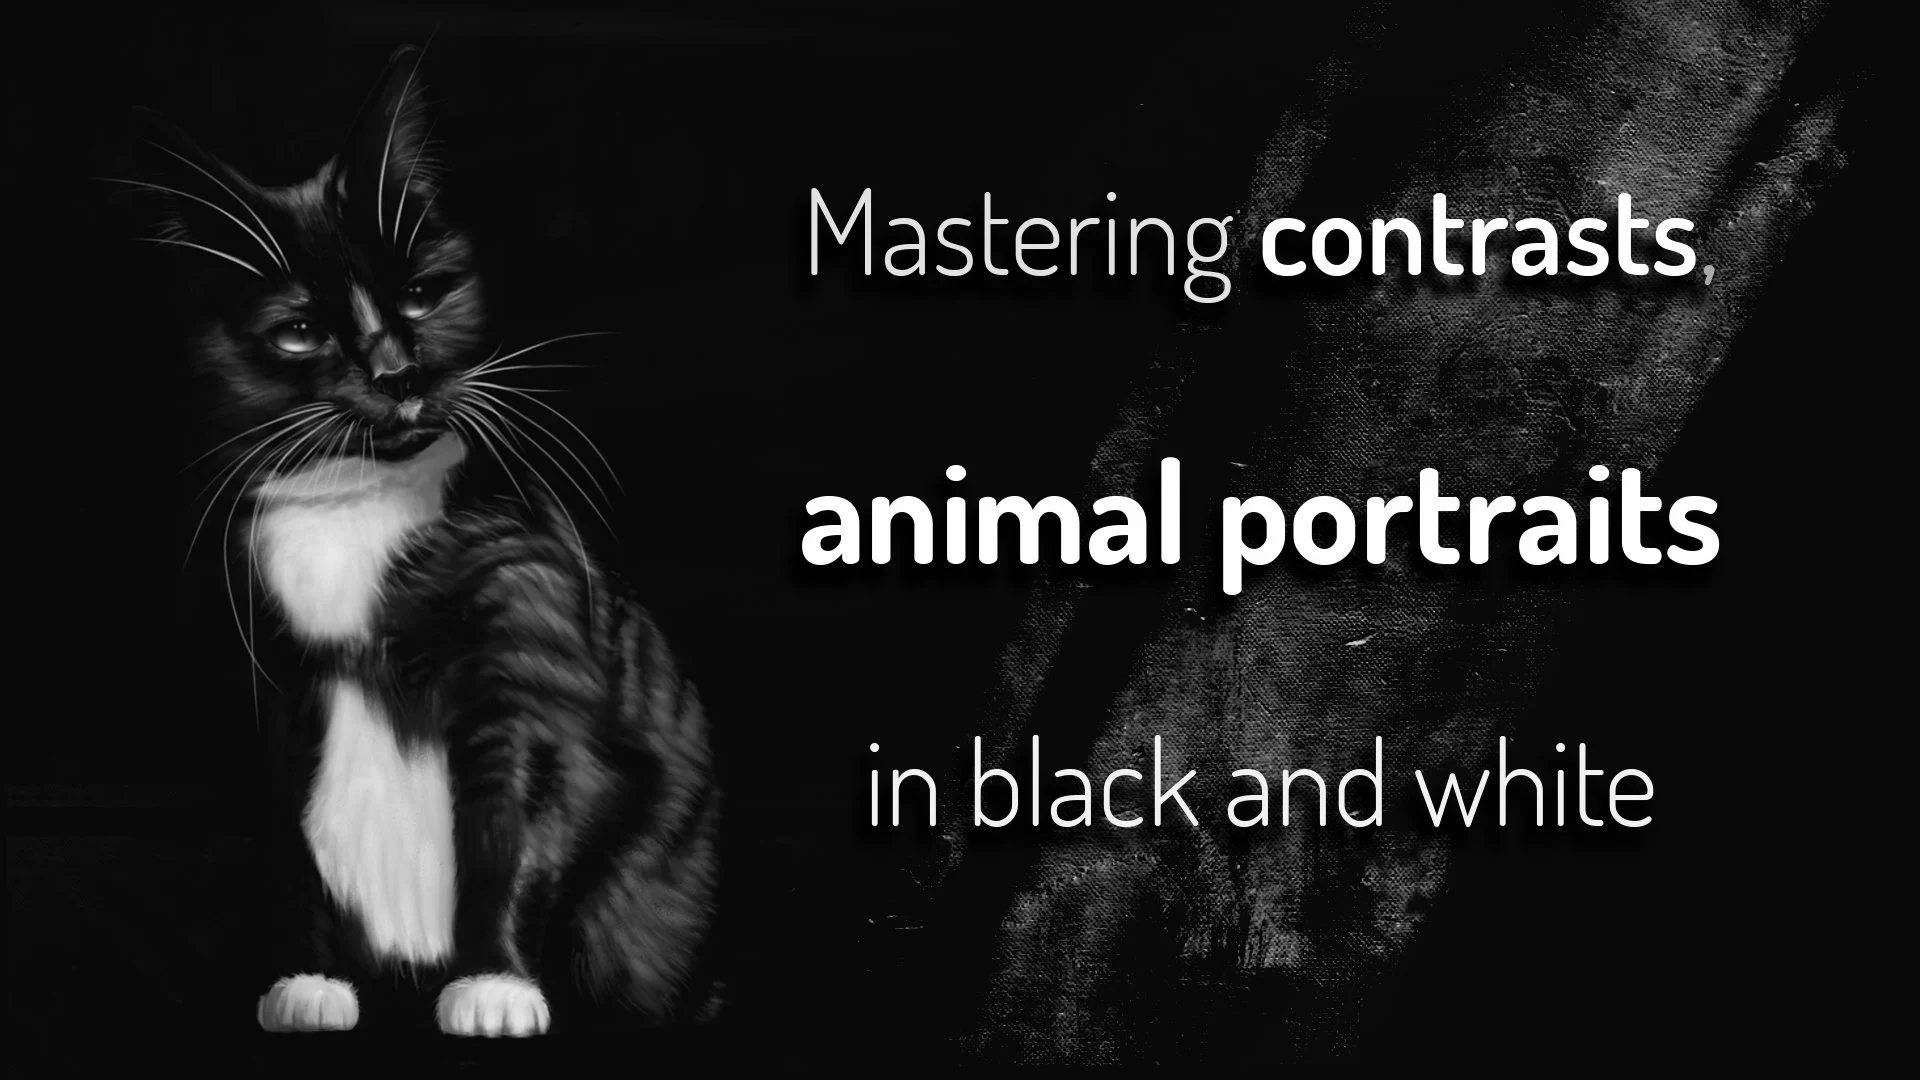 آموزش تسلط بر کنتراست ها، پرتره های حیوانات سیاه و سفید (نقاشی دیجیتال)